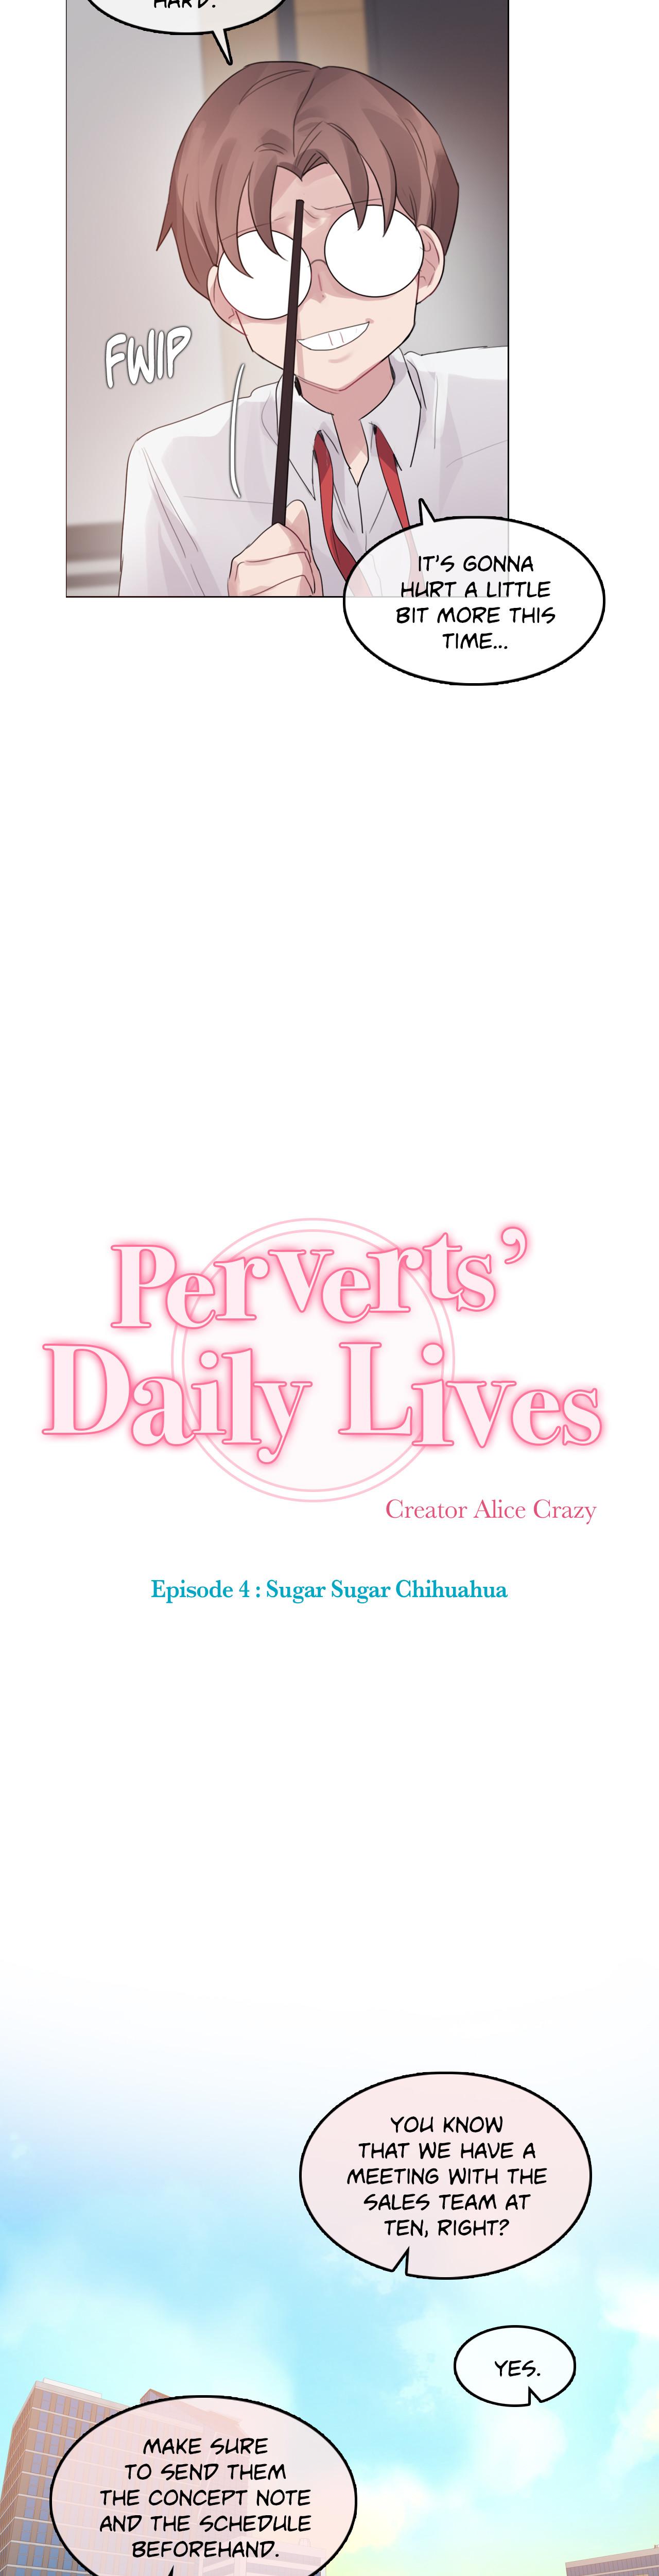 Perverts' Daily Lives Episode 4: Sugar Sugar Chihuahua 24